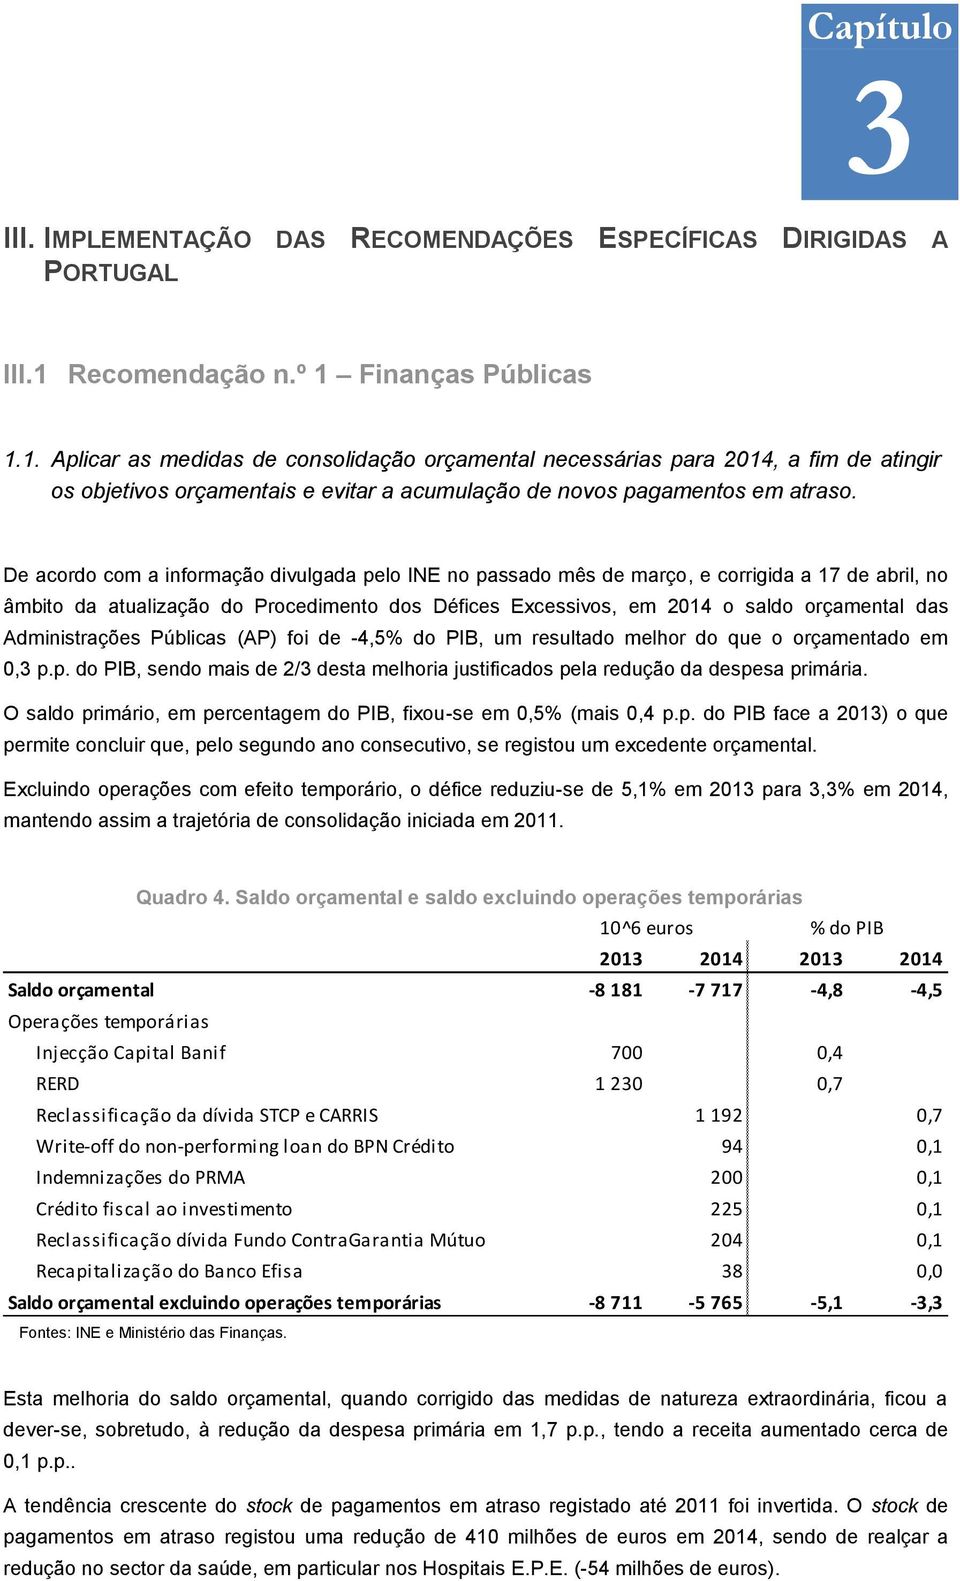 De acordo com a informação divulgada pelo INE no passado mês de março, e corrigida a 17 de abril, no âmbito da atualização do Procedimento dos Défices Excessivos, em 2014 o saldo orçamental das